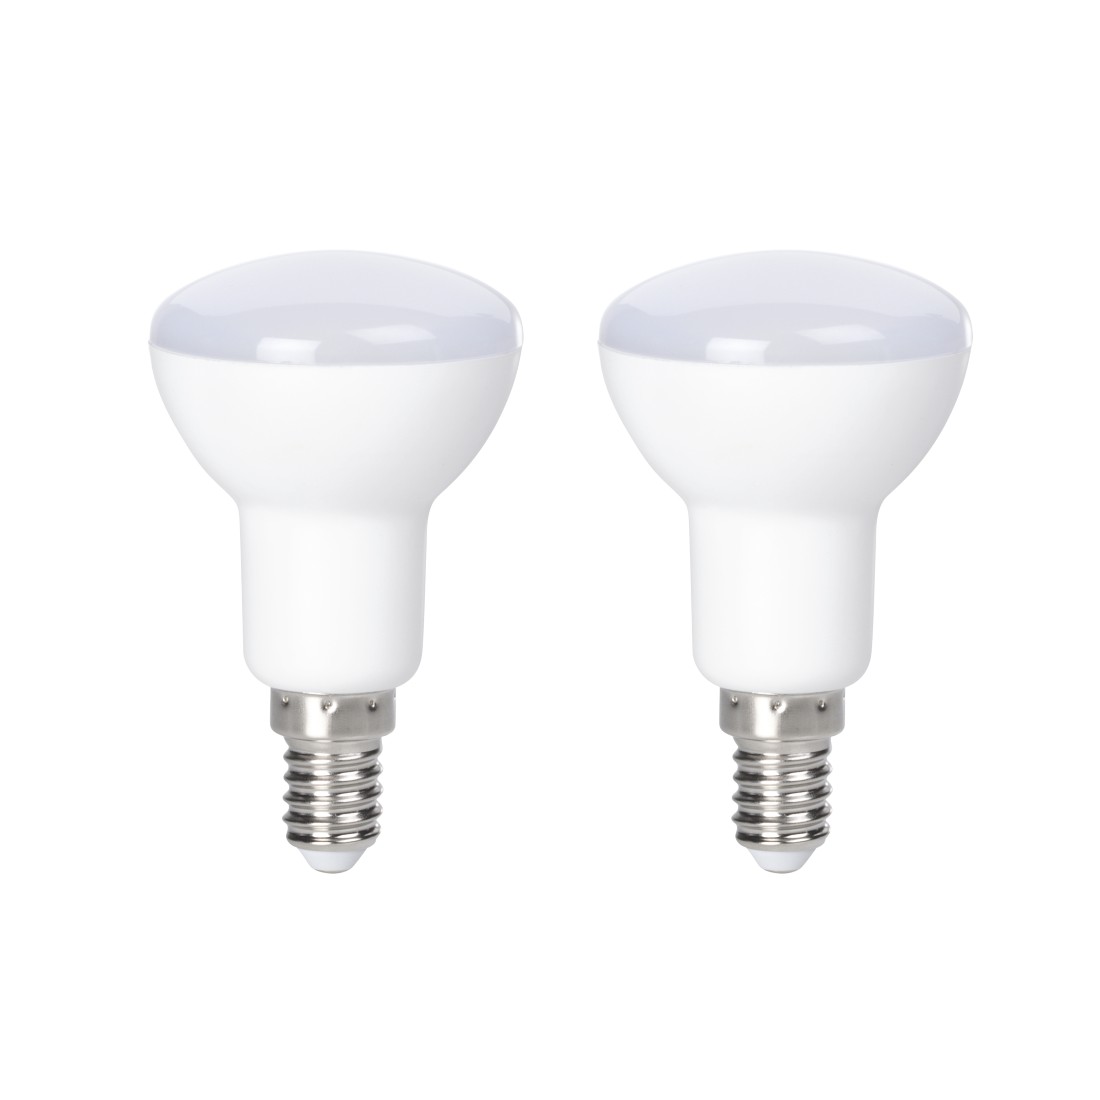 abx Druckfähige Abbildung - Xavax, LED-Lampe, E14, 400lm ersetzt 35W, Reflektorlampe R50, Warmweiß, 2 Stück